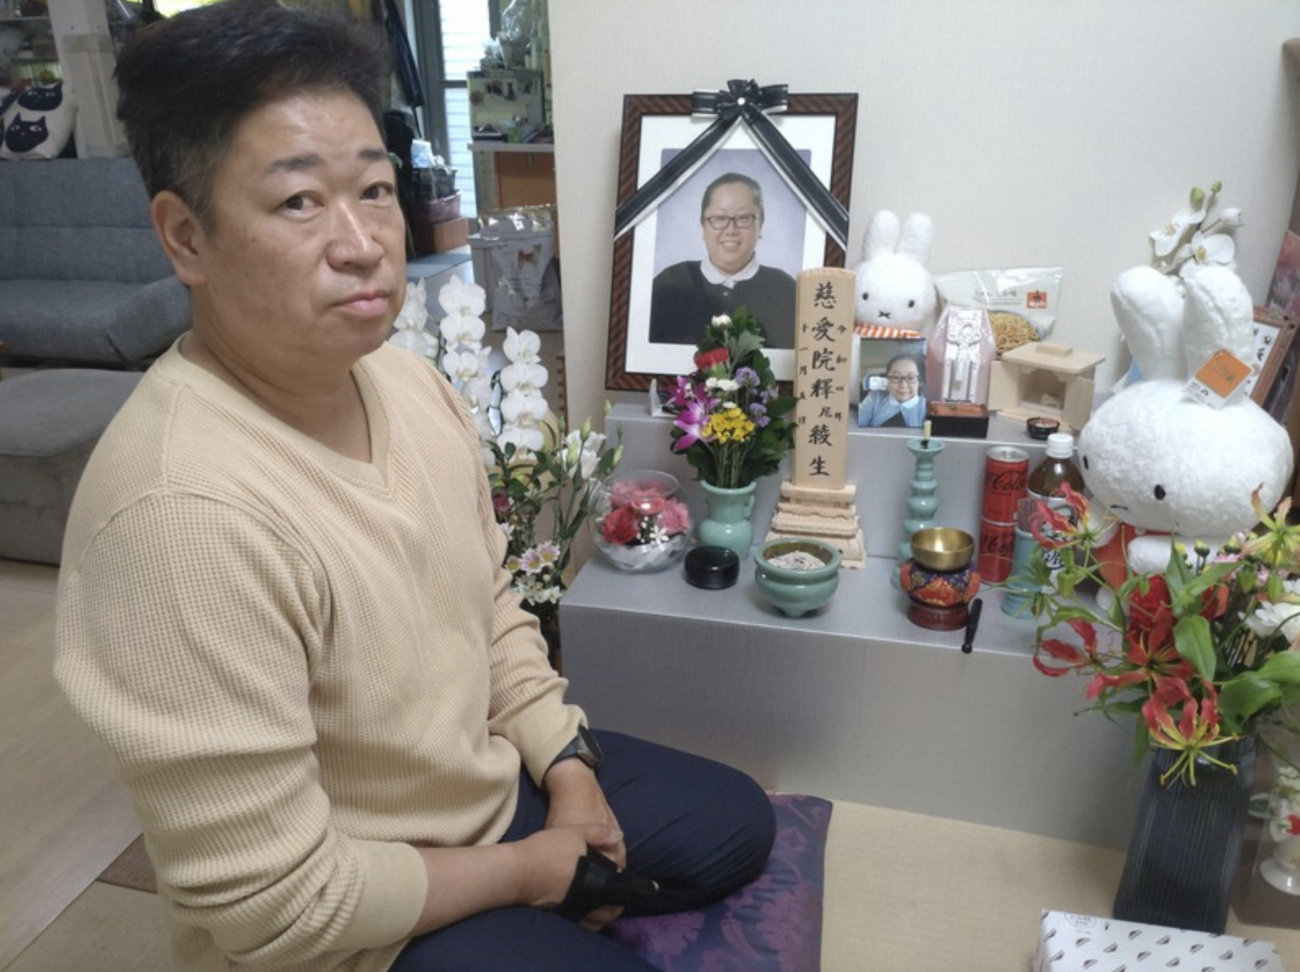 コロナワクチン接種で妻を亡くした男性、愛知県愛西市に賠償金4500万円を求めて提訴　接種直後に息苦しさ、搬送先の病院で死亡